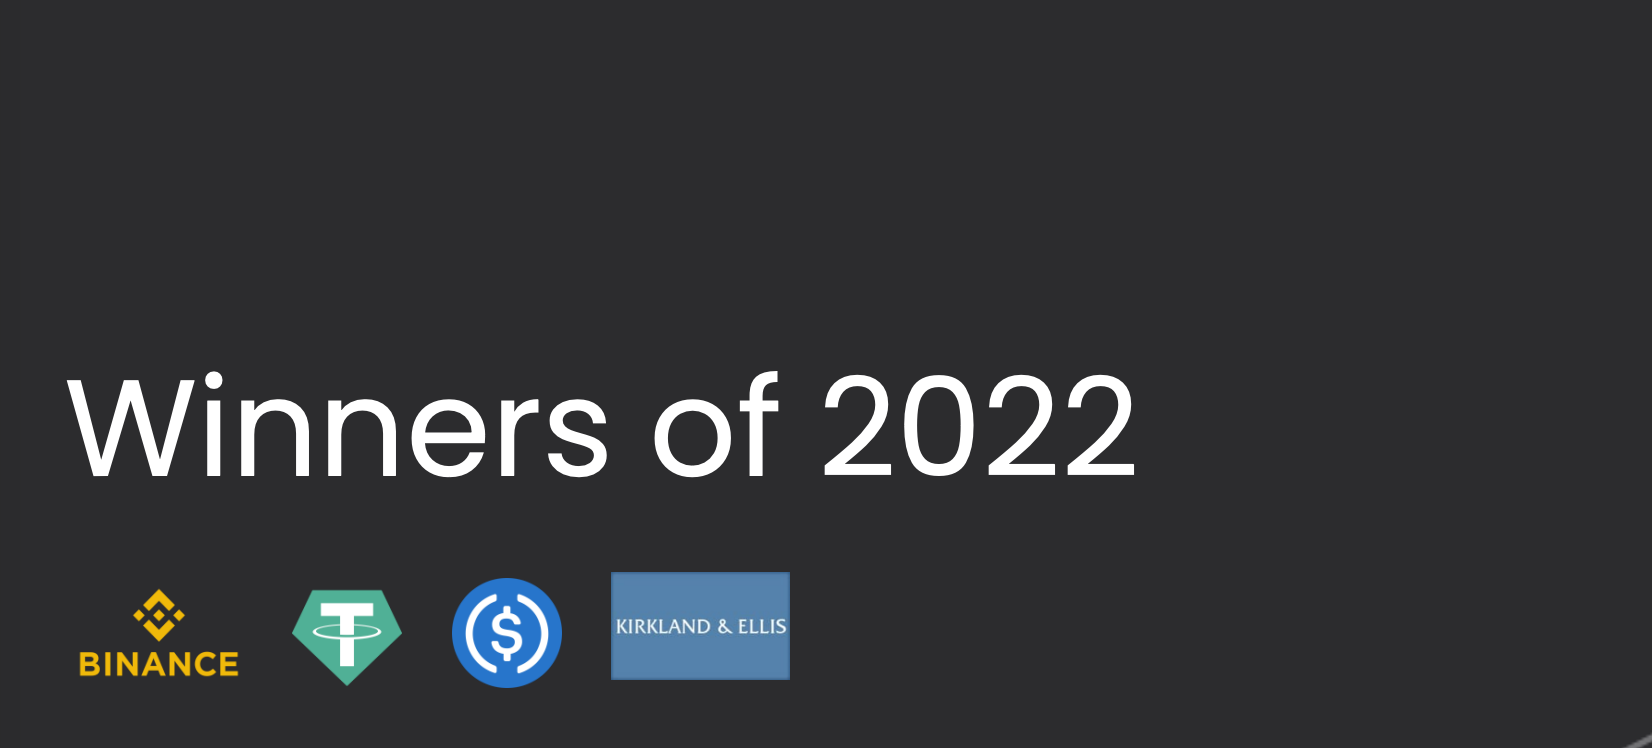 برندگان دنیای کریپتو سال ۲۰۲۲